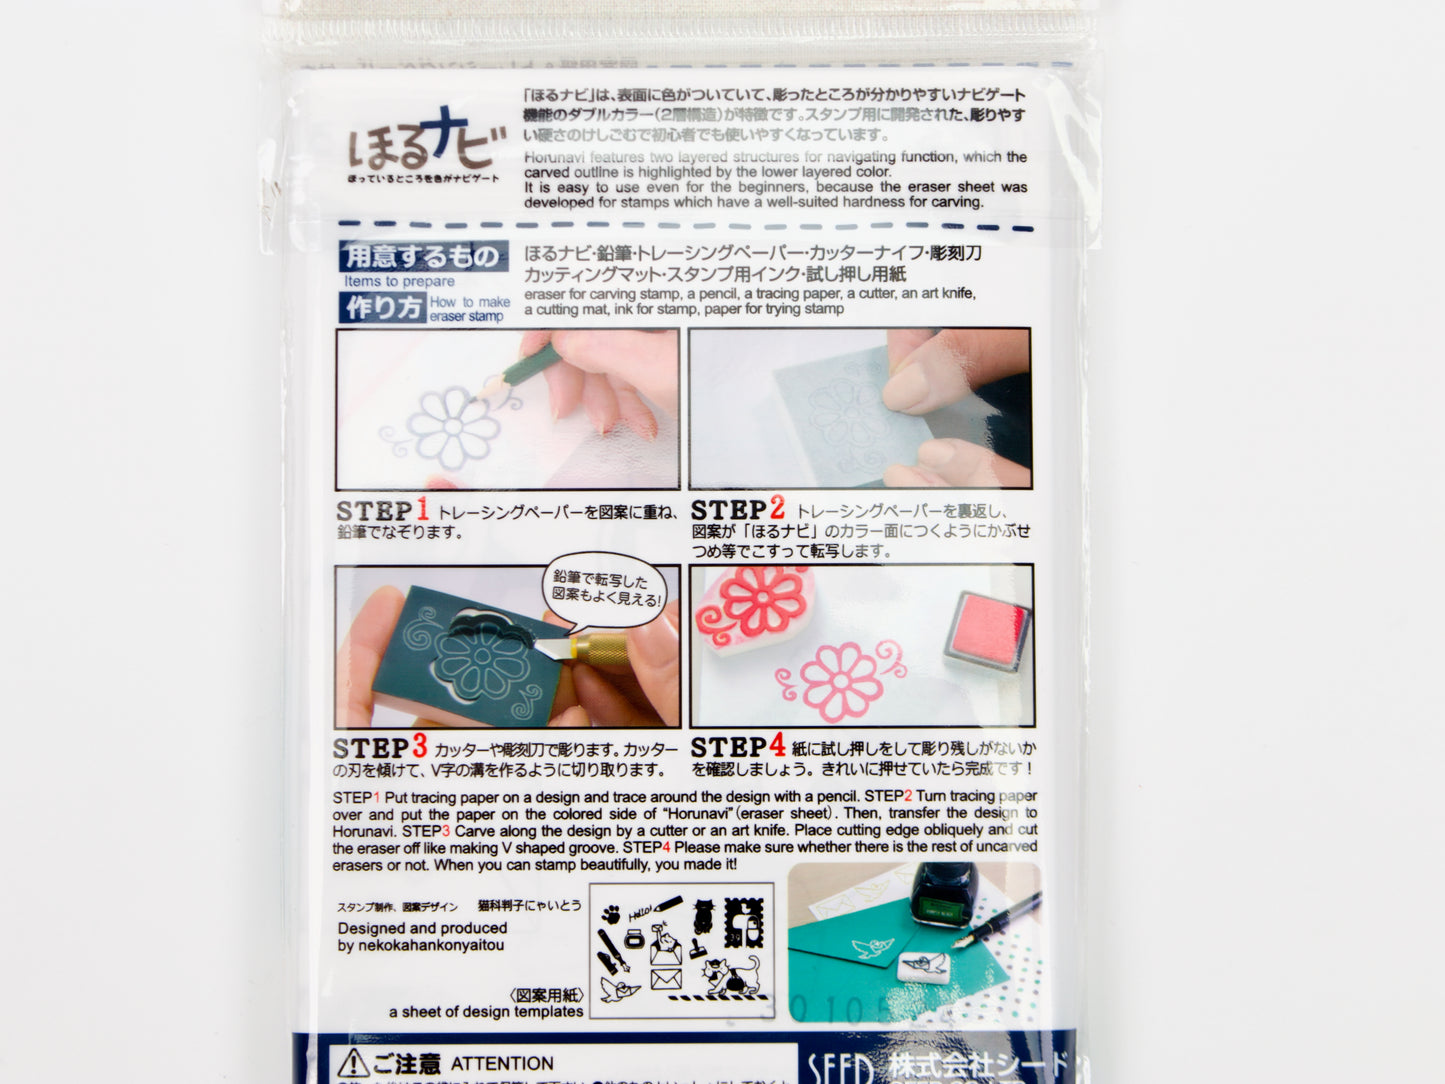 SEED Eraser Stamp Sheet